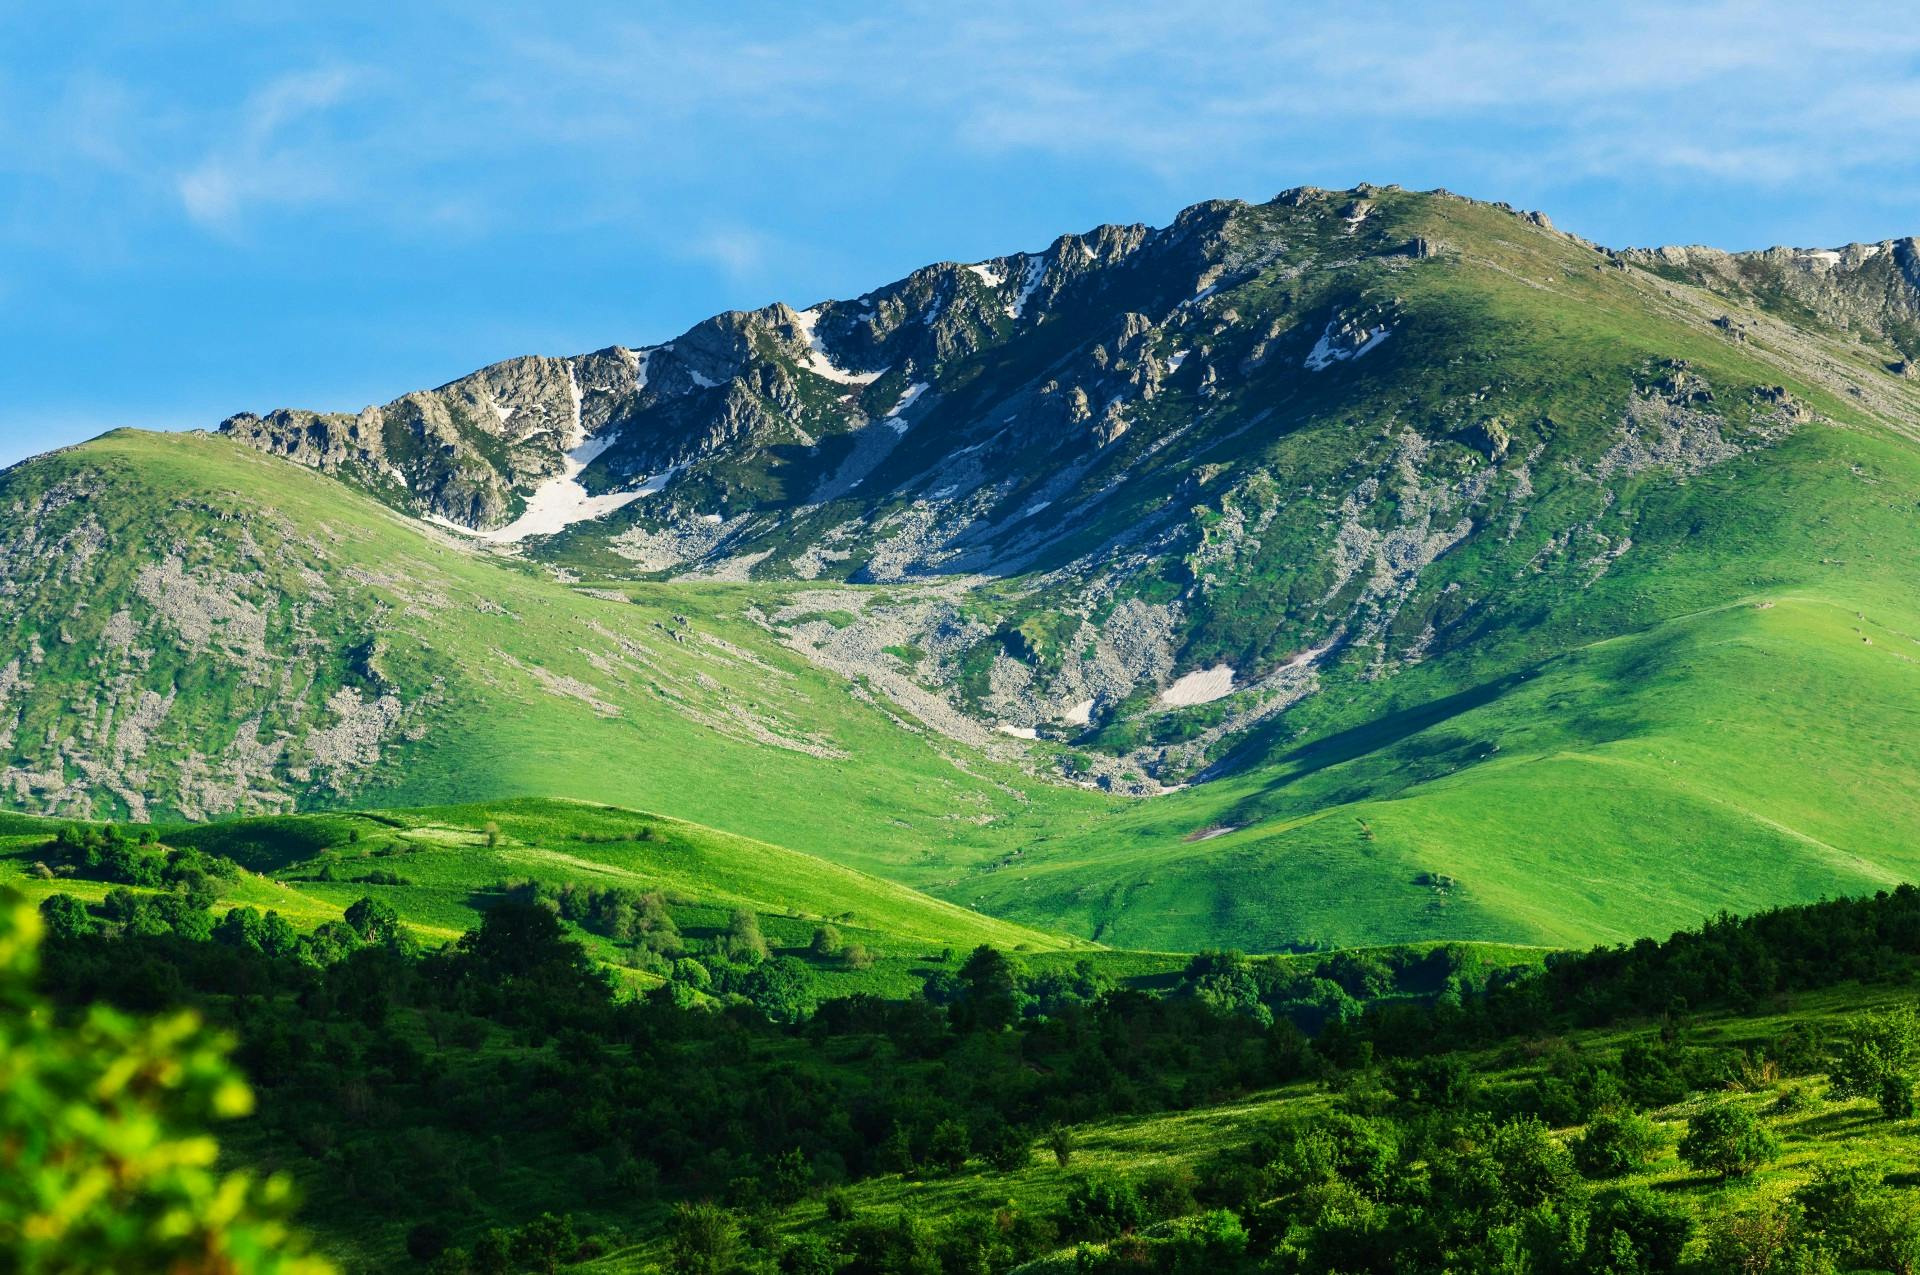 The mountains of Armenia